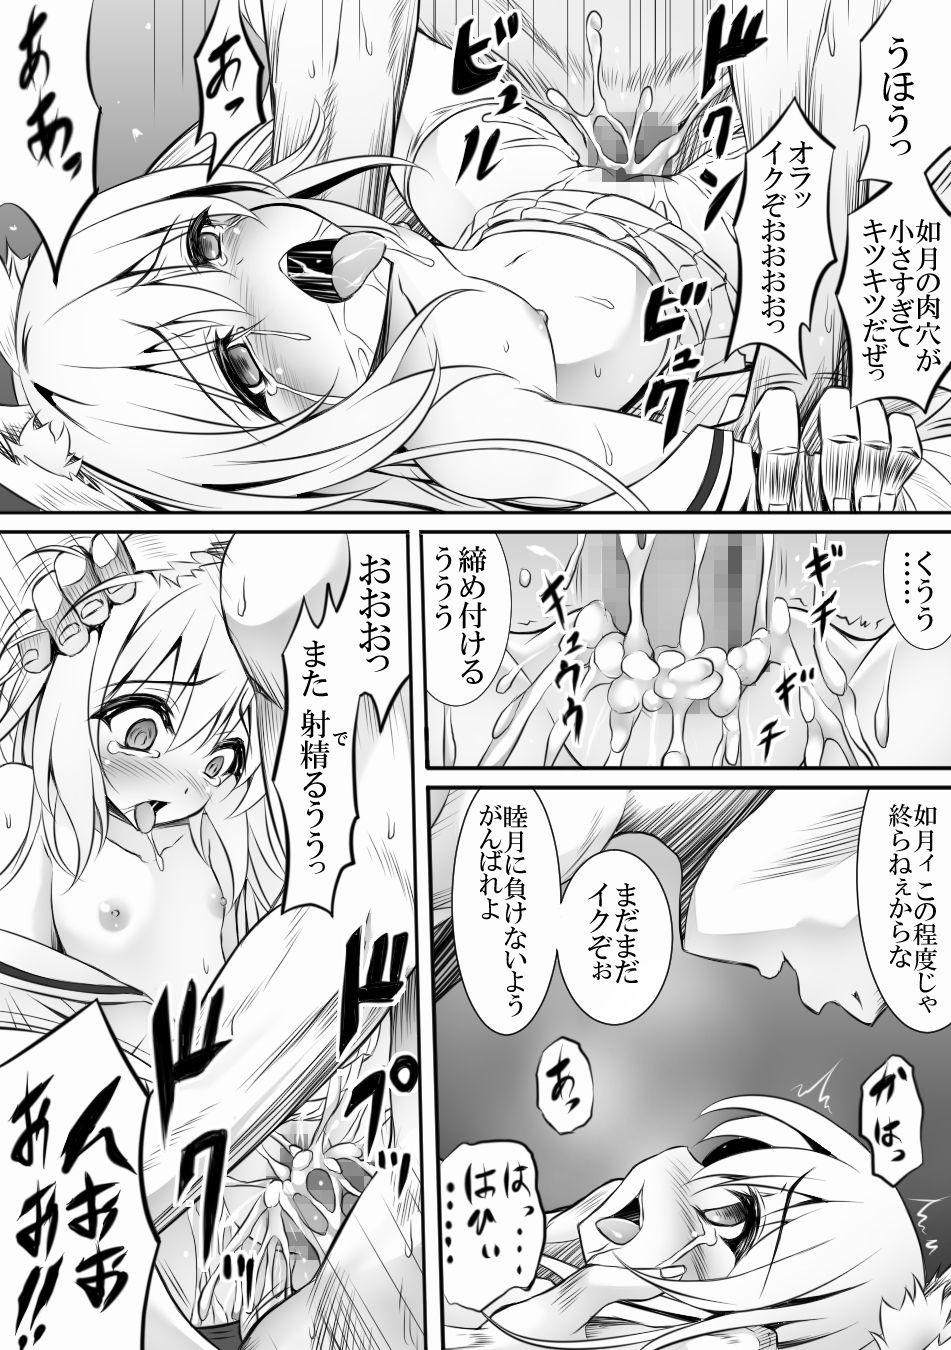 Suck Cock AzuLan 1 Page Manga - Azur lane Lesbian Sex - Page 1